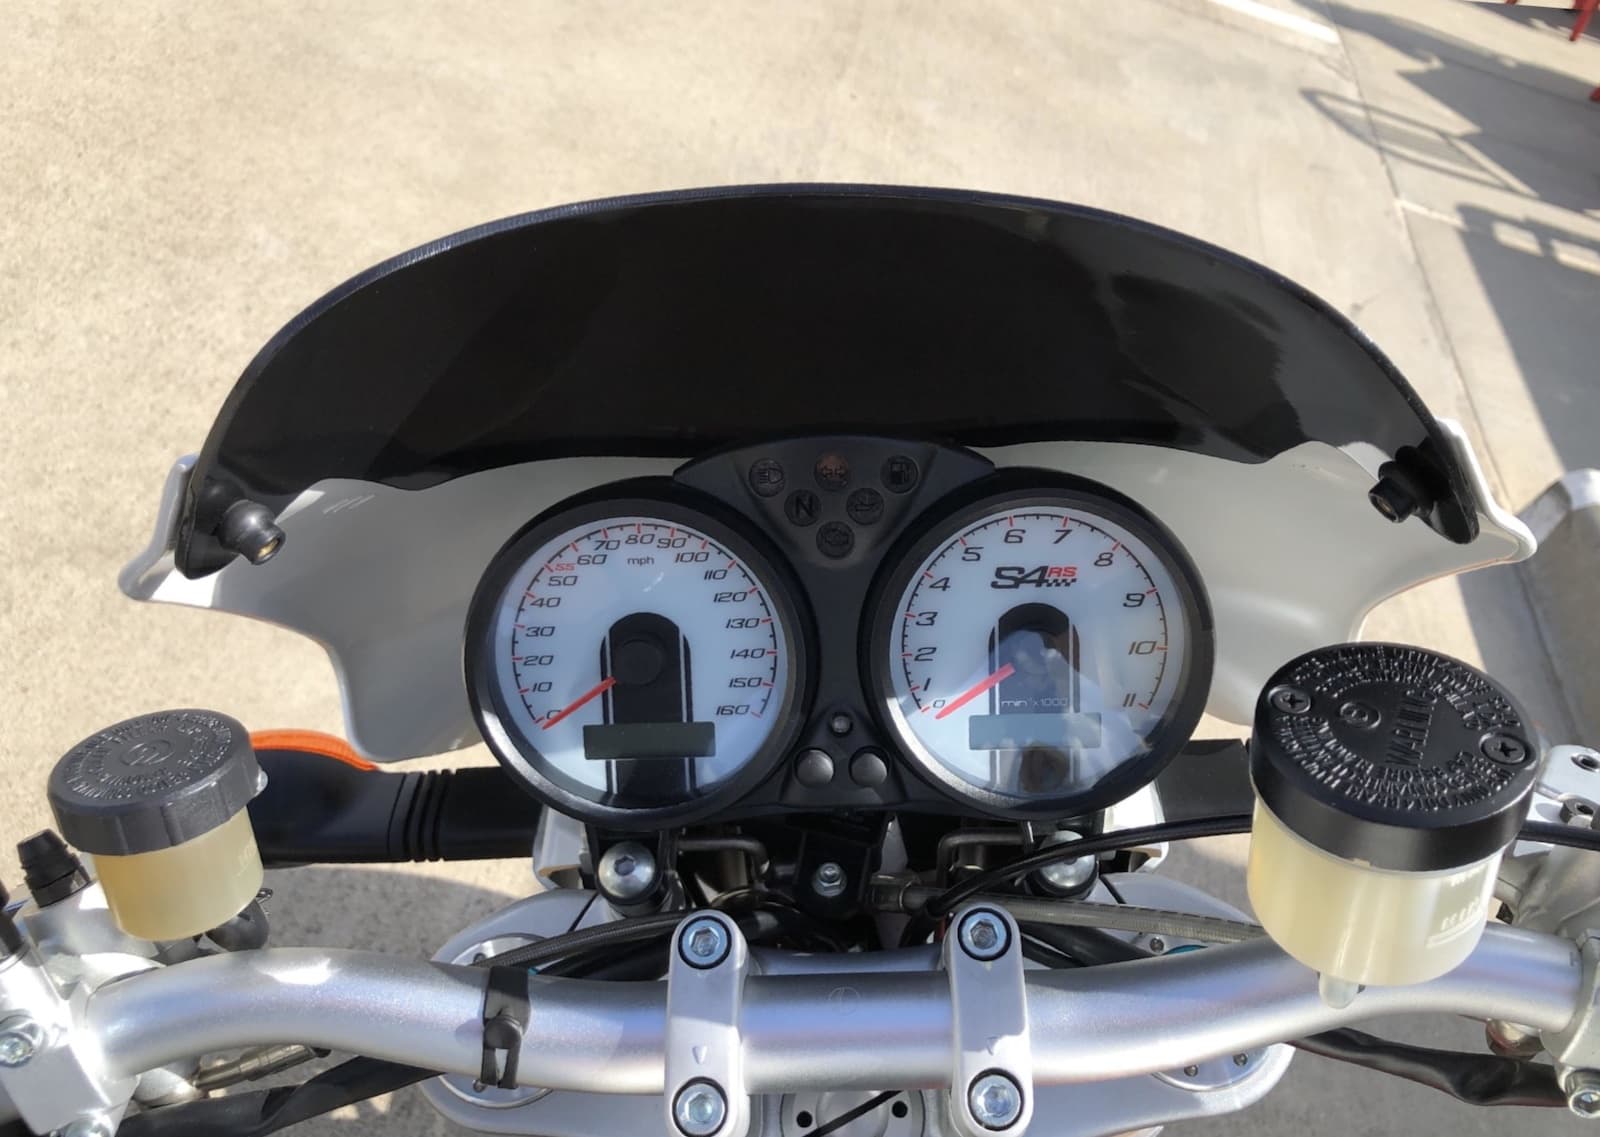 Ducati Monster S4Rs gauges instrument cluster